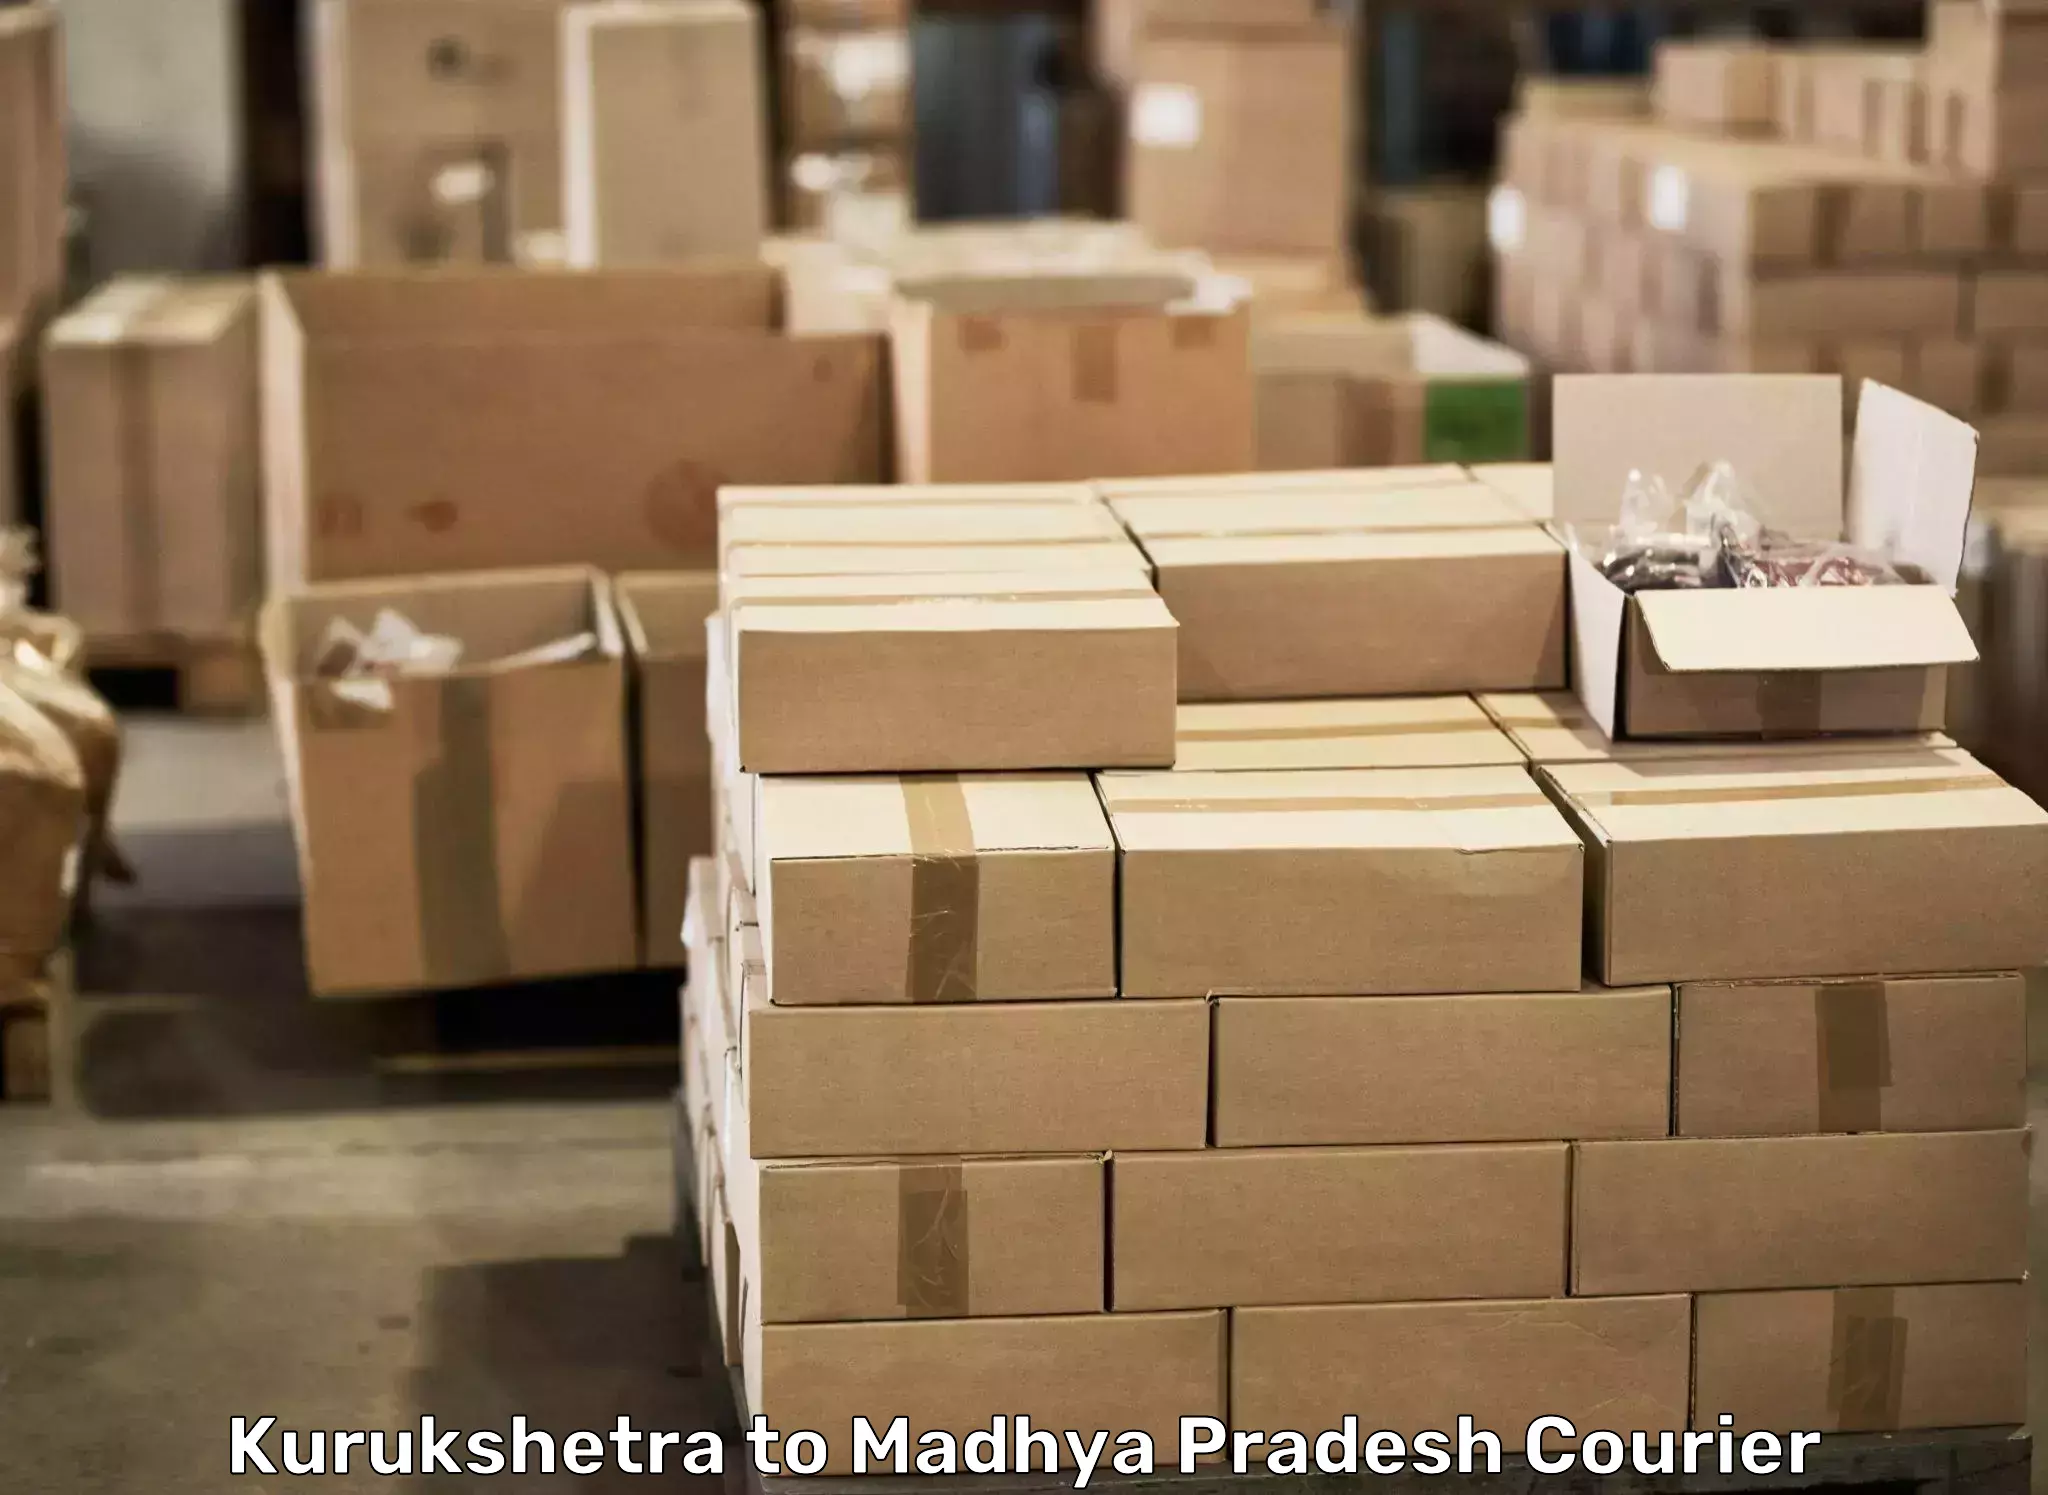 Efficient moving company Kurukshetra to Harda